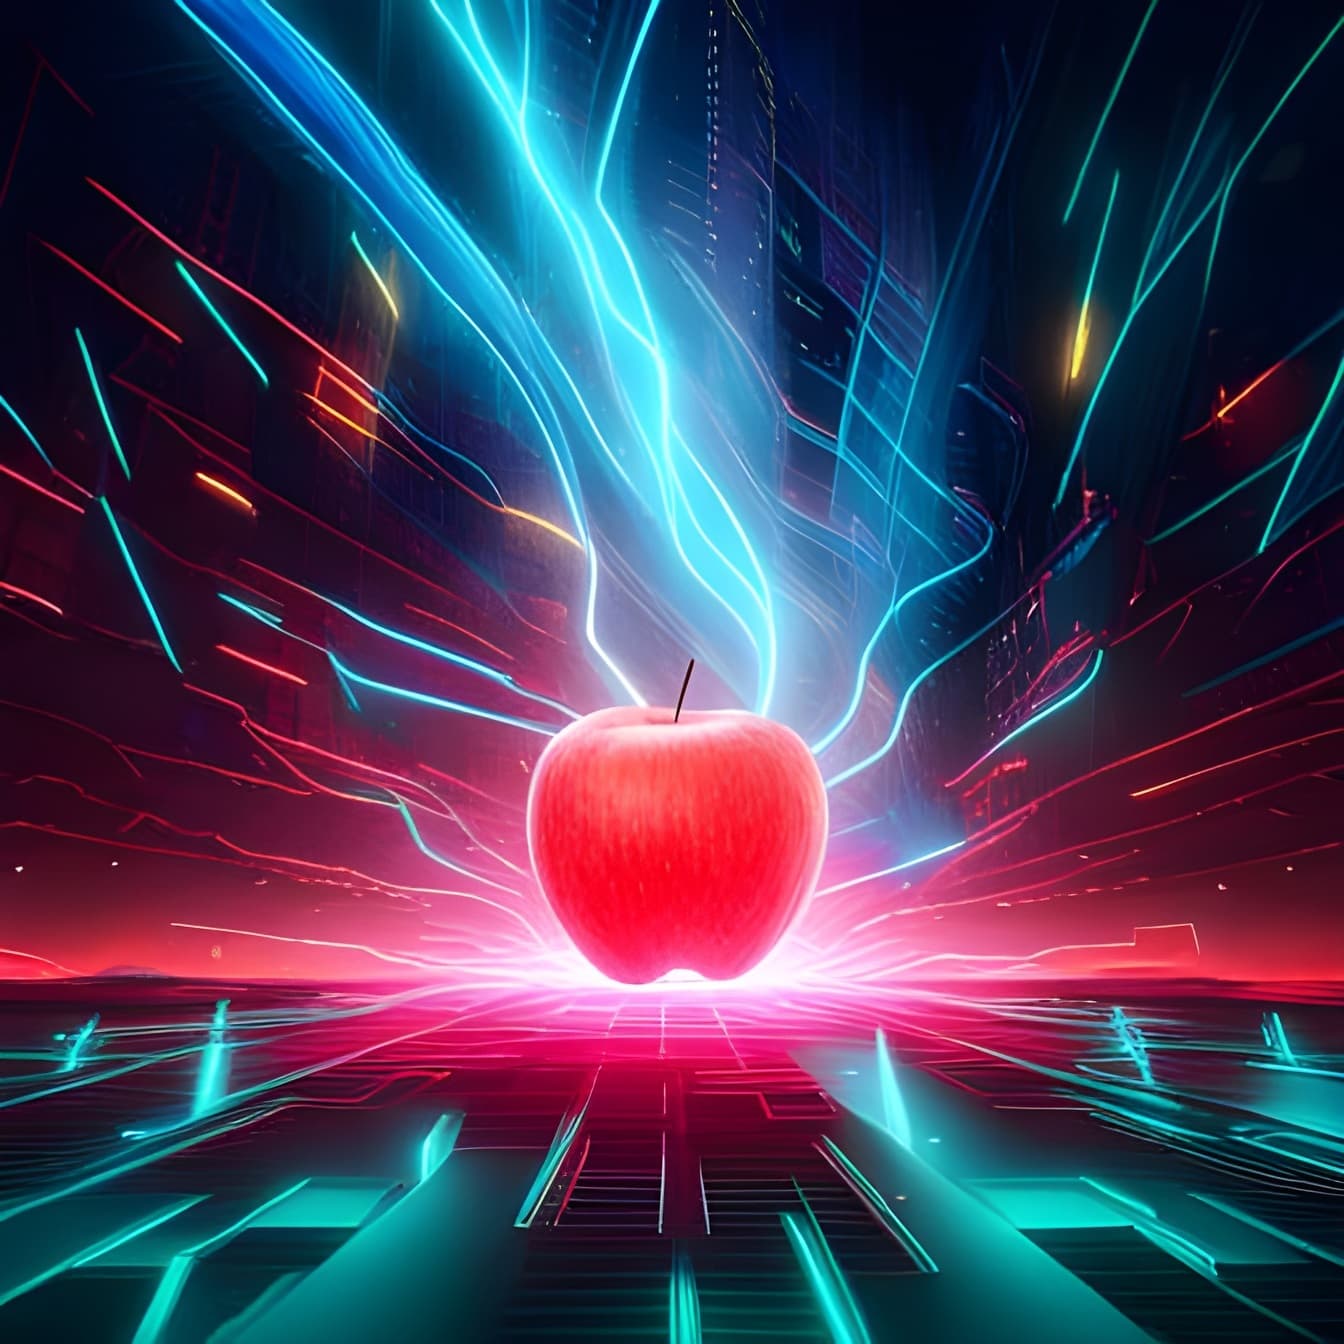 Illustrazione di mela rossa scura con sfondo laser luci verdi